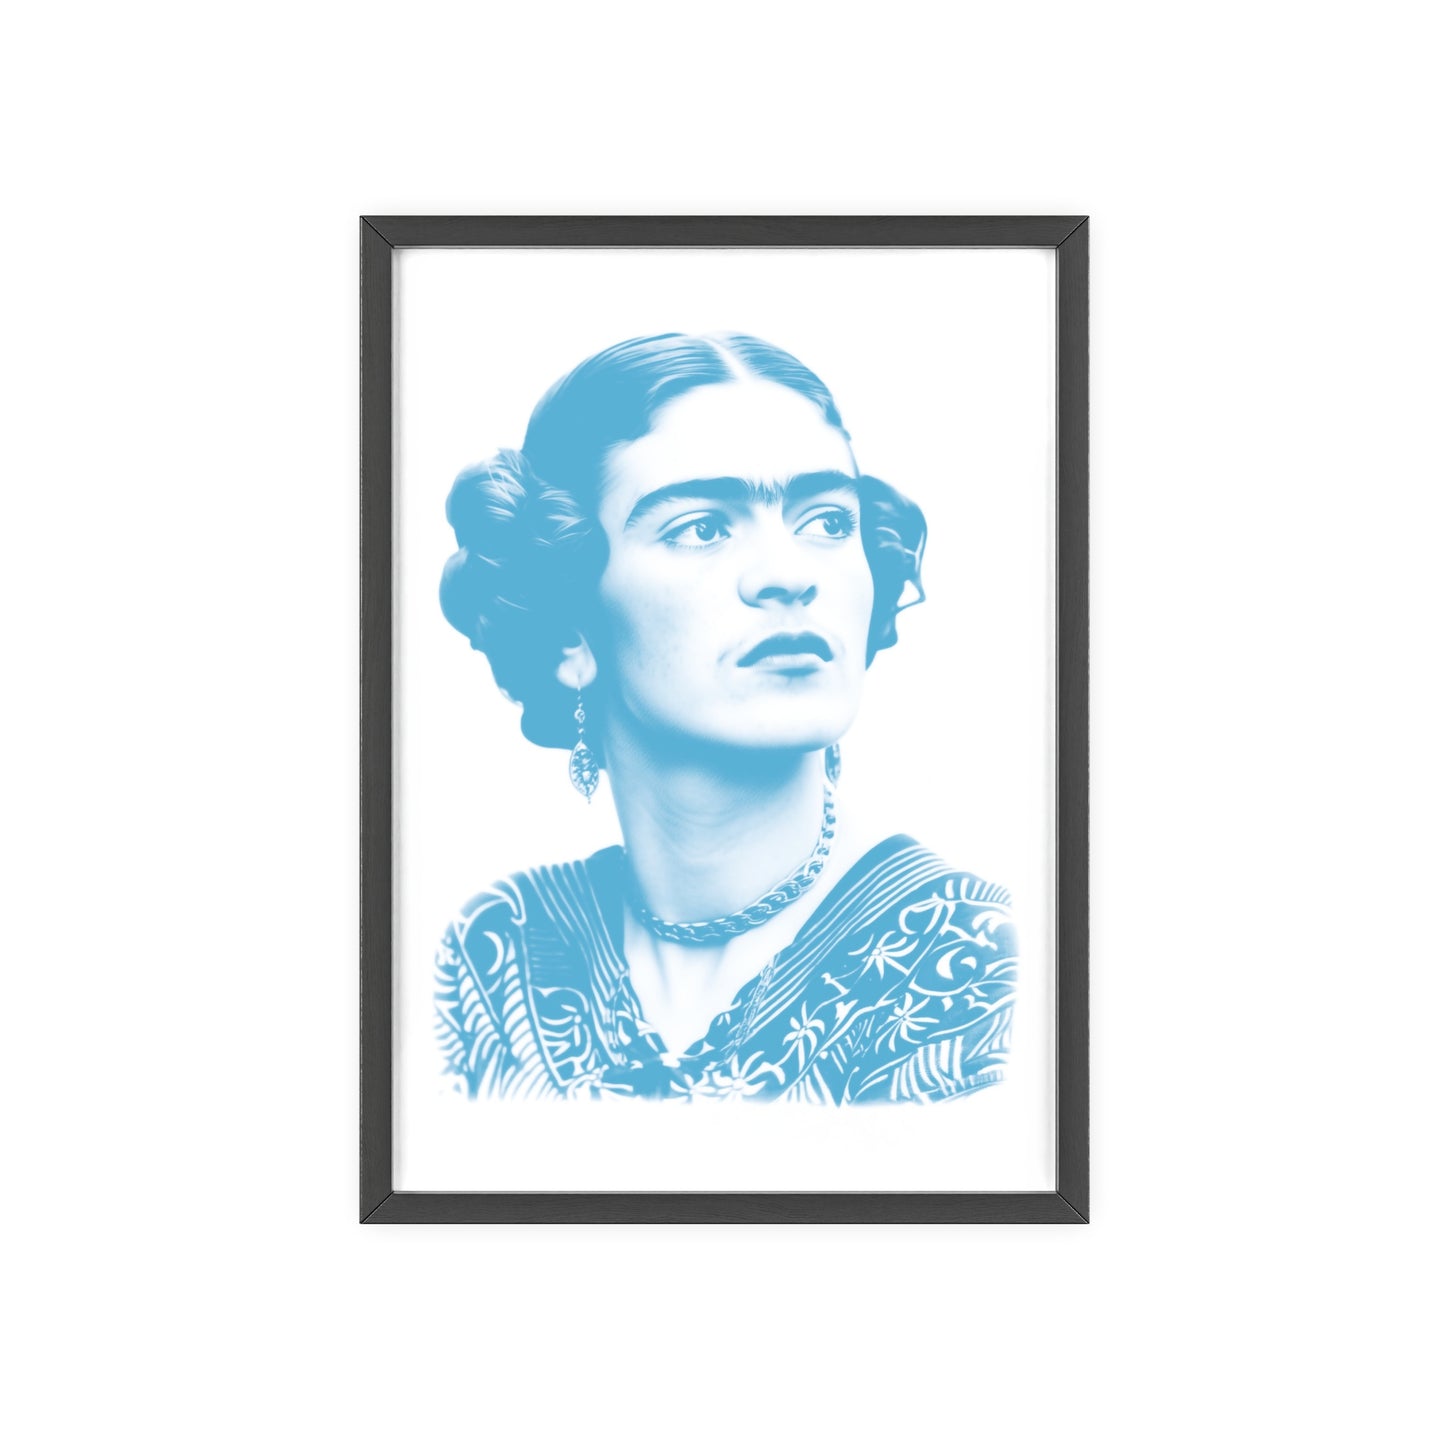 Frida en cyan - Portrait